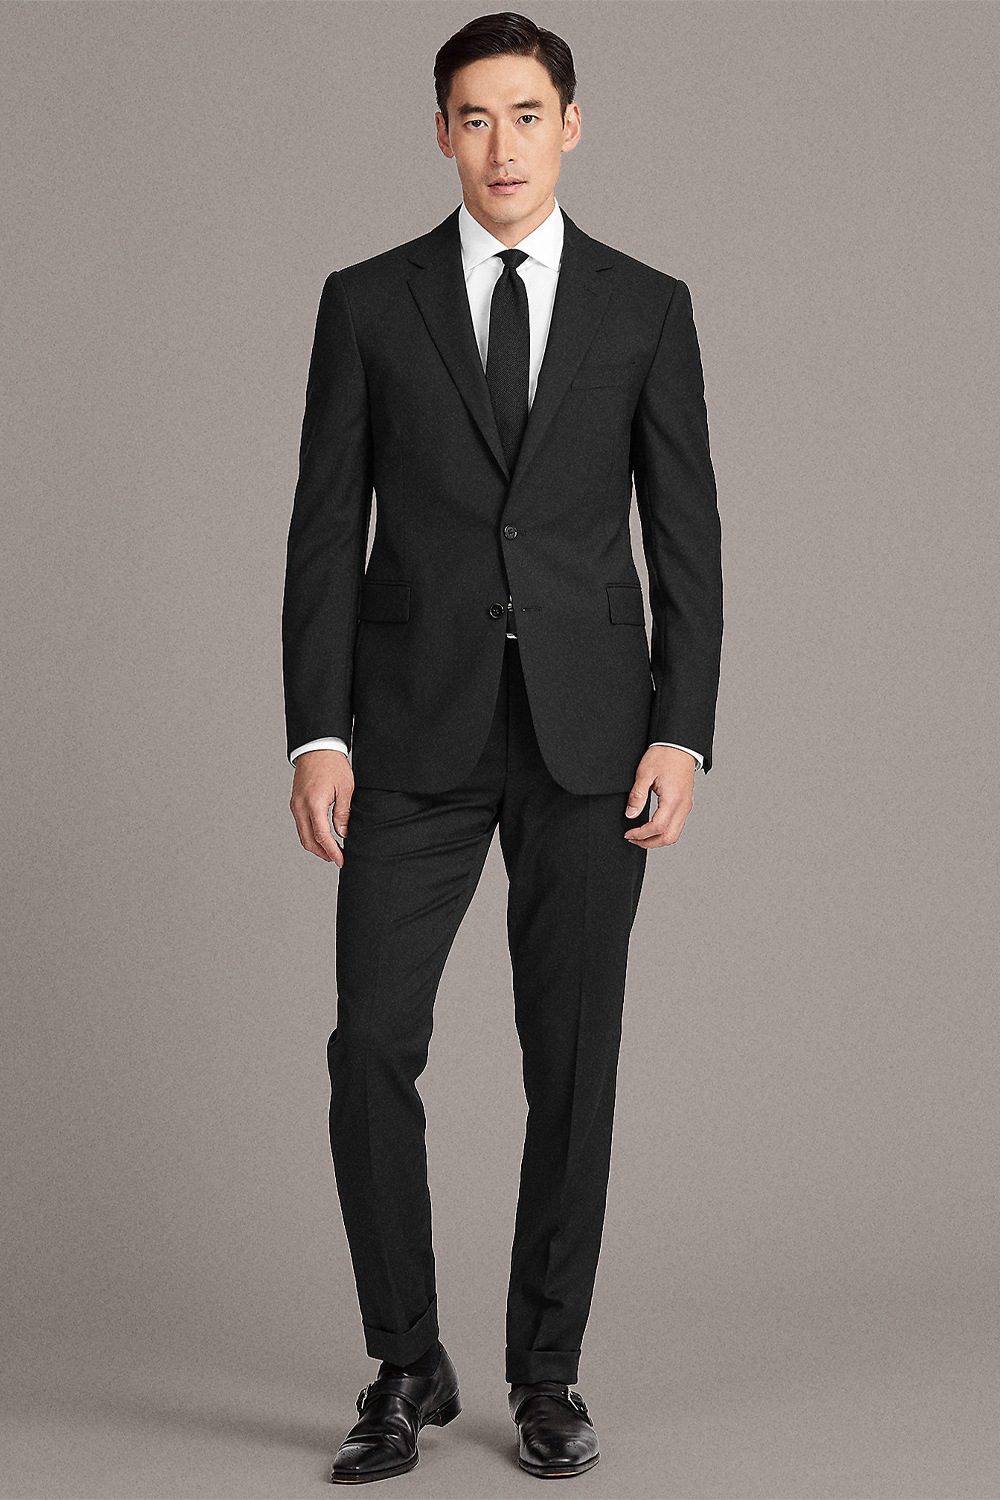 Best shoes for black suit